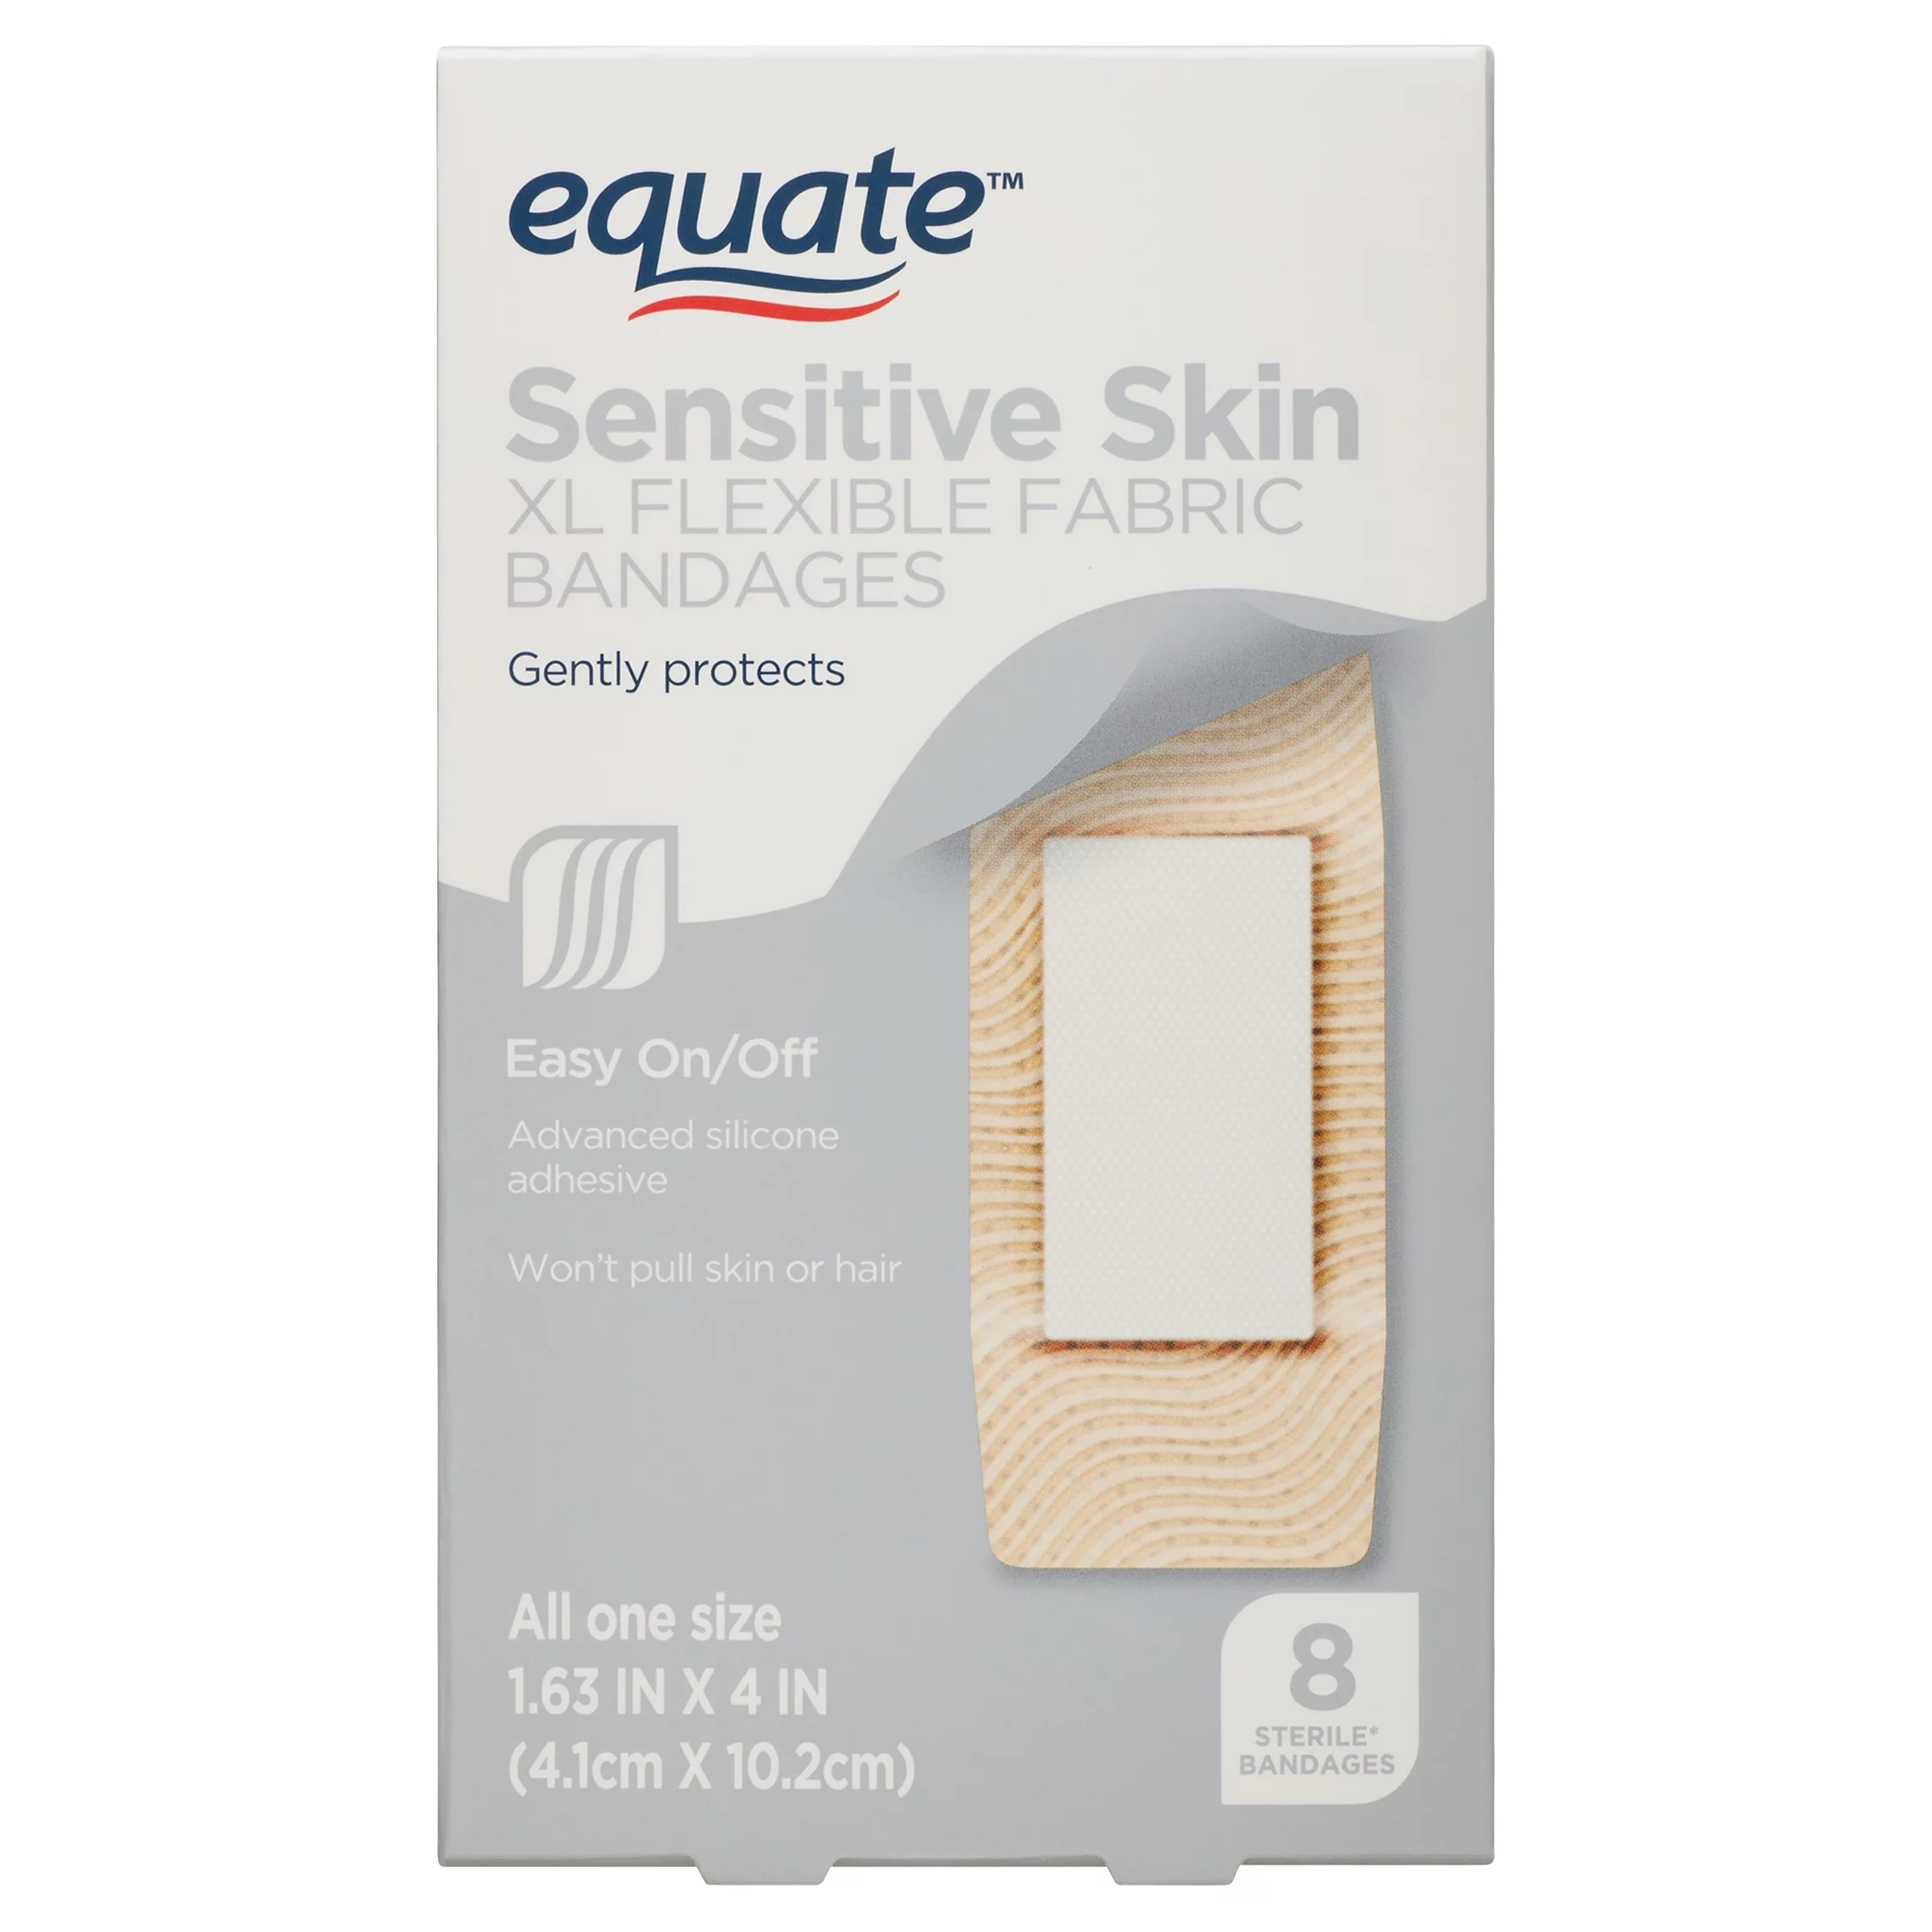 Equate Sensitive Skin Adhesive Bandages, 8 Count